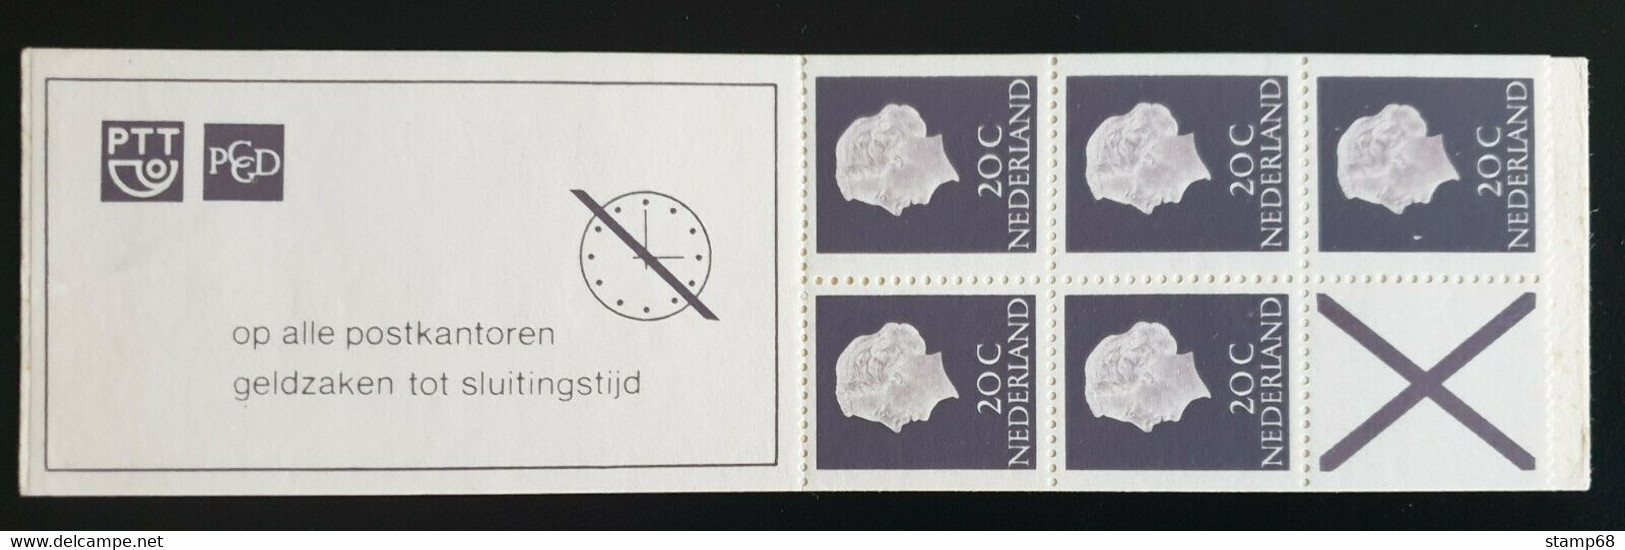 Nederland NVPH PB6eF Smal Kruis Postzegelboekje 1968 MNH Postfris - Markenheftchen Und Rollen